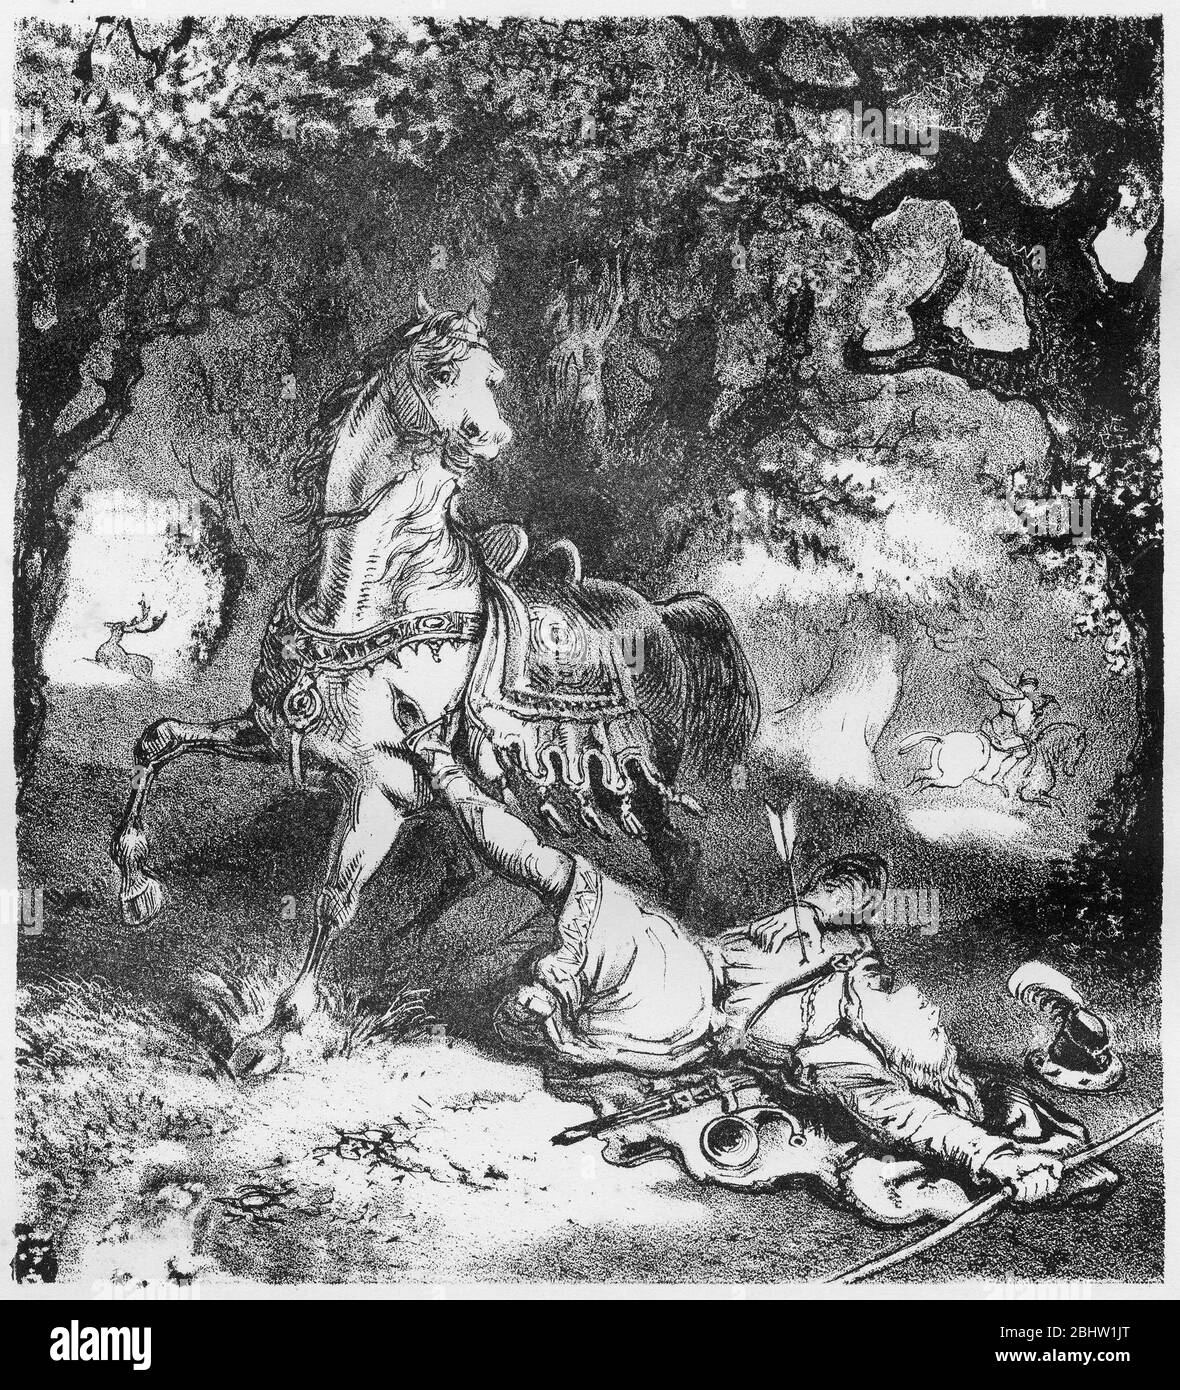 Gravur von König Wilhelm II von England (c. 1056-1100), der bei der Jagd durch einen Pfeil getroffen wurde. Das Bild impliziert, dass der Tod nicht zufällig war. Stockfoto